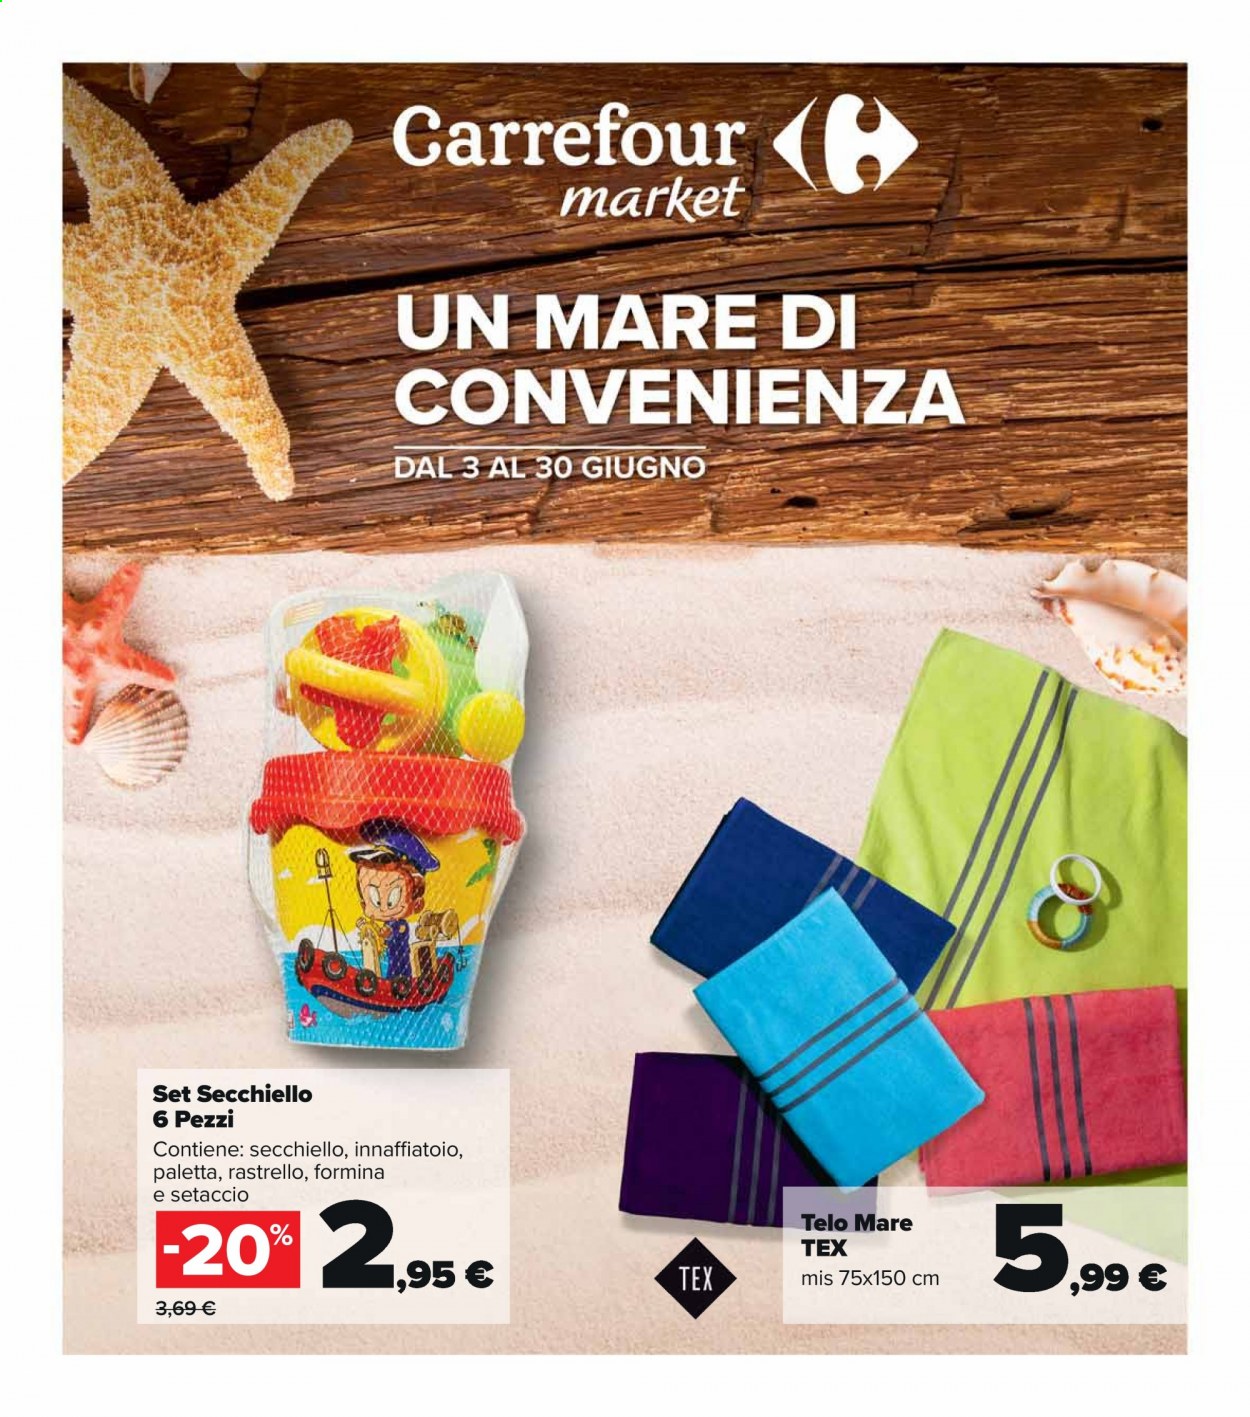 Volantino Carrefour - 3.6.2021 - 30.6.2021.